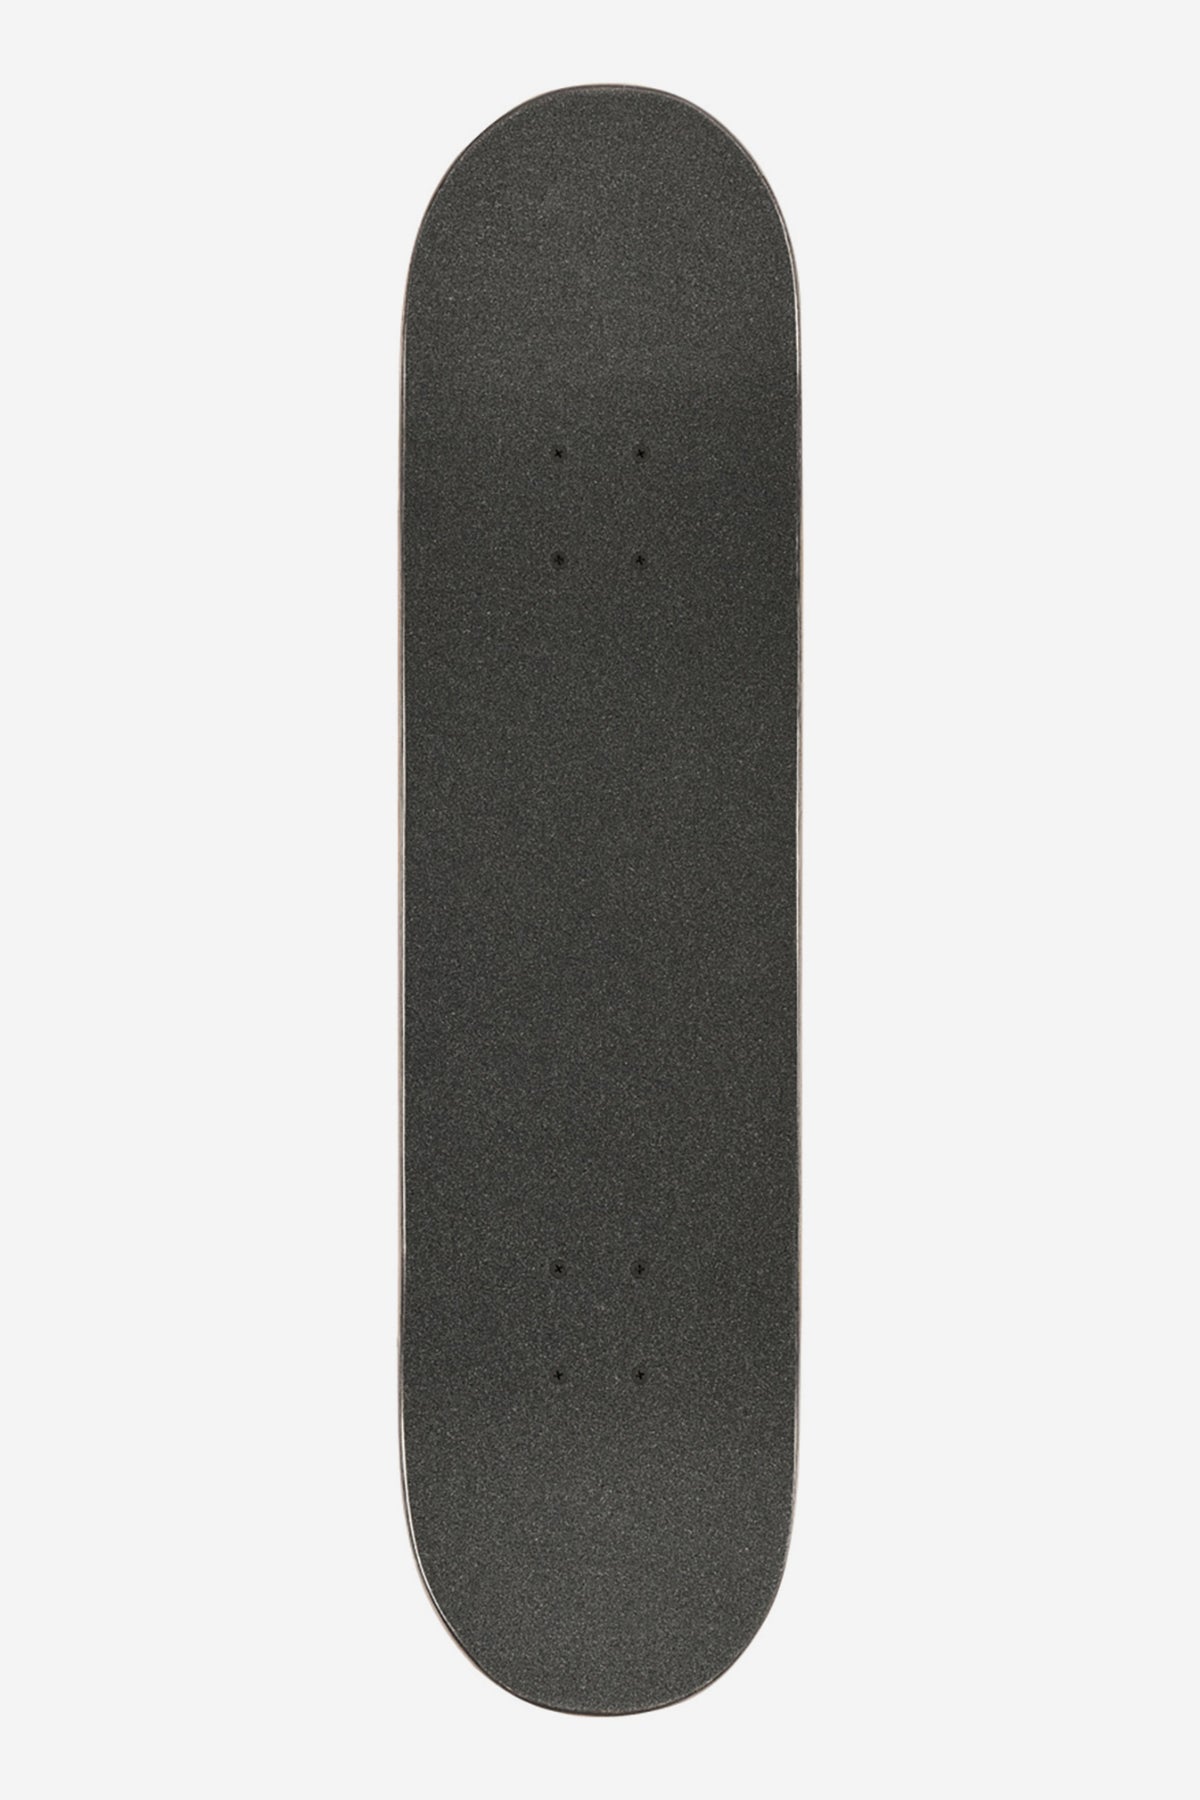 Globe - Goodstock - Sahara- 8.375" Komplett Skateboard